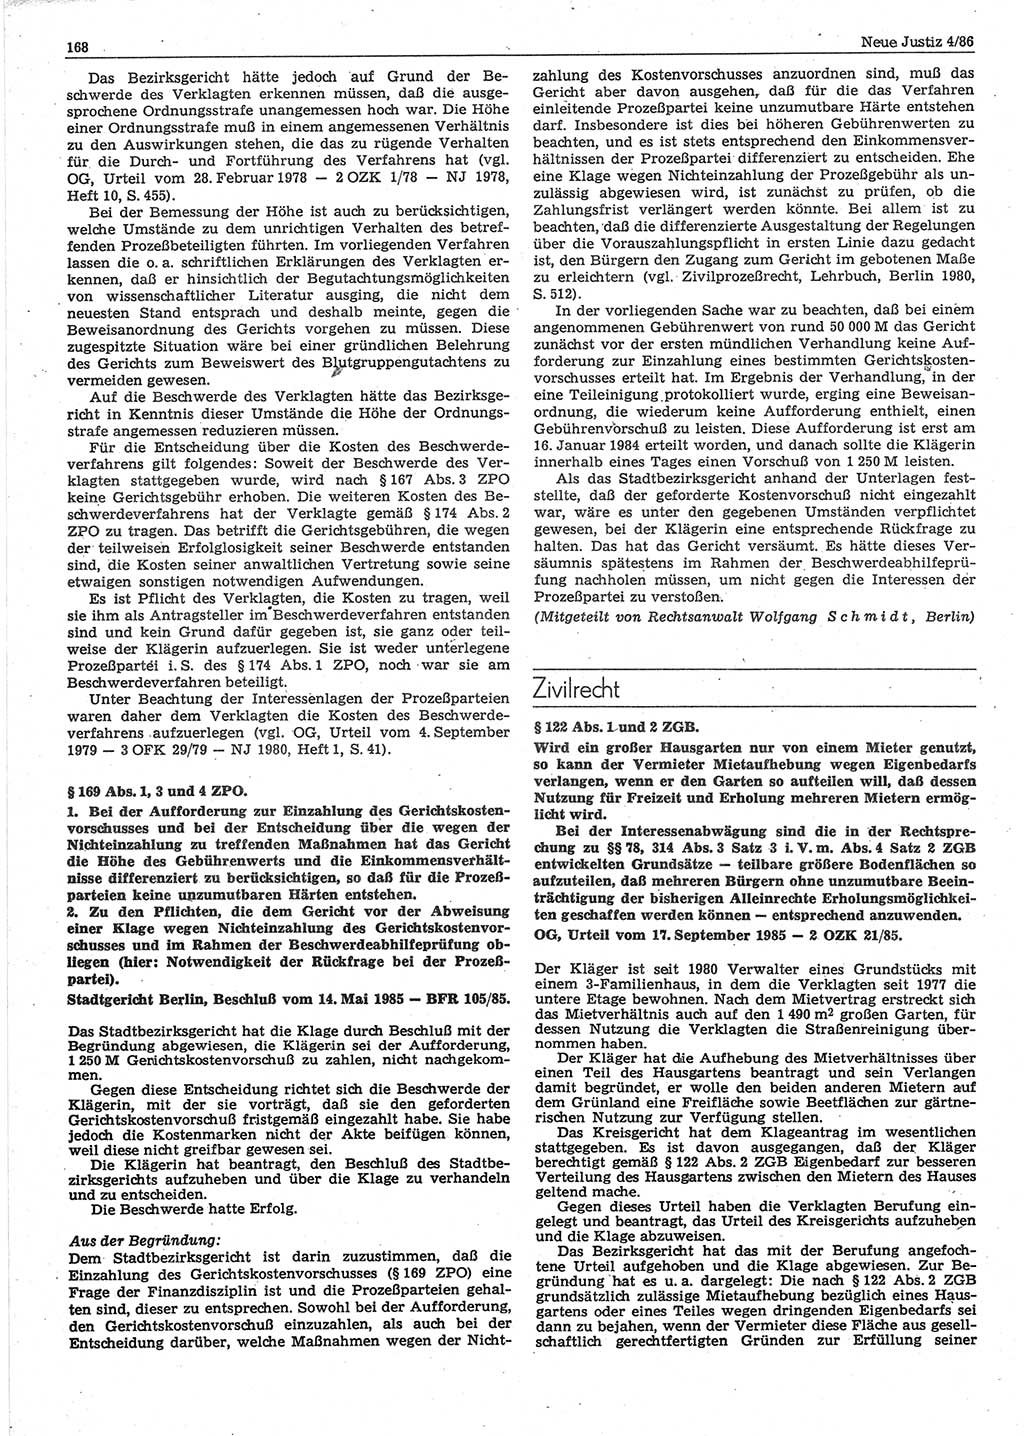 Neue Justiz (NJ), Zeitschrift für sozialistisches Recht und Gesetzlichkeit [Deutsche Demokratische Republik (DDR)], 40. Jahrgang 1986, Seite 168 (NJ DDR 1986, S. 168)